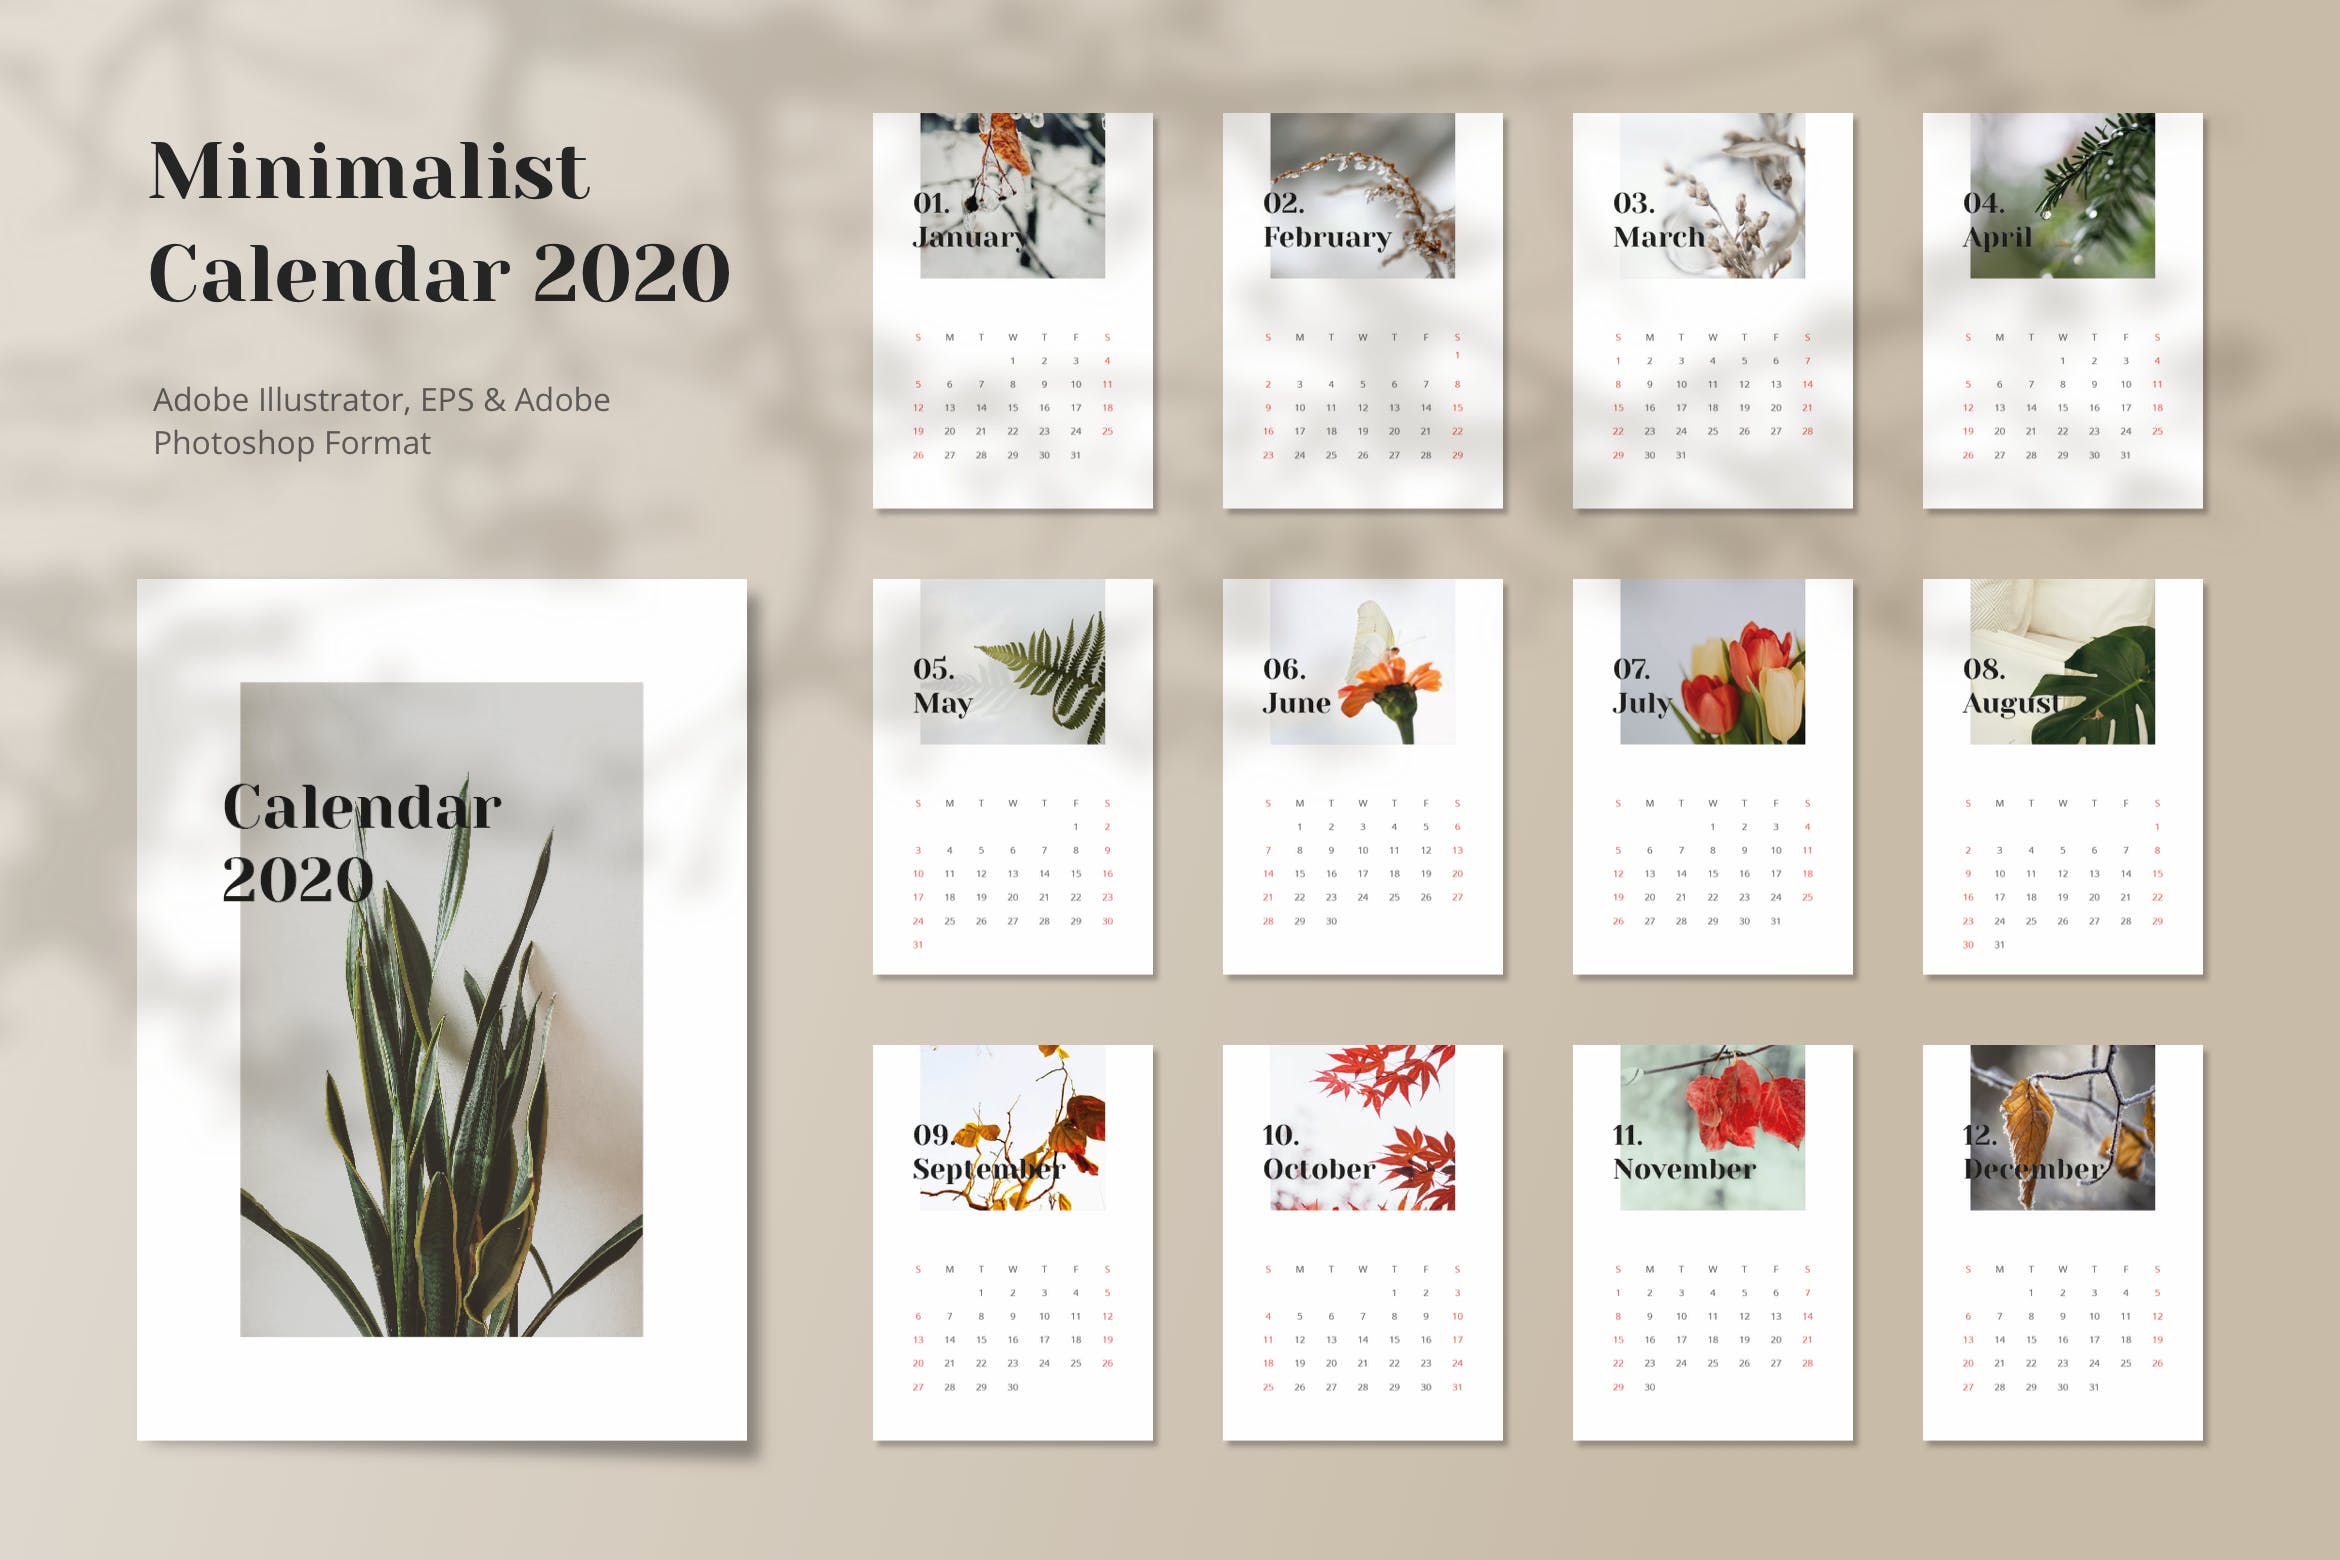 极简设计风格2020年日历年历设计模板 Calendar 2020 Minimalist插图